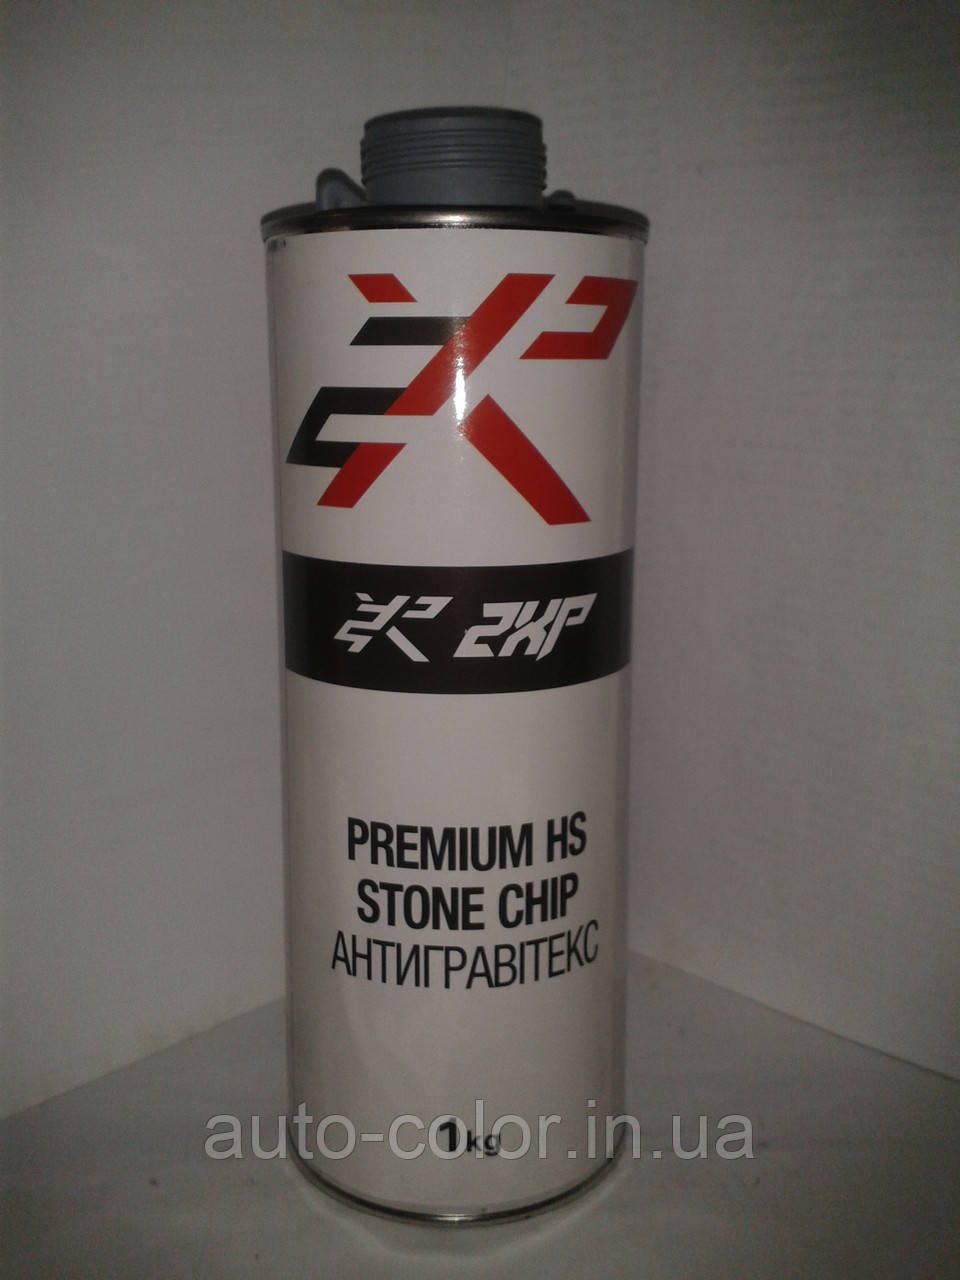 Антигравитекс 2XP 1 кг (сірий)